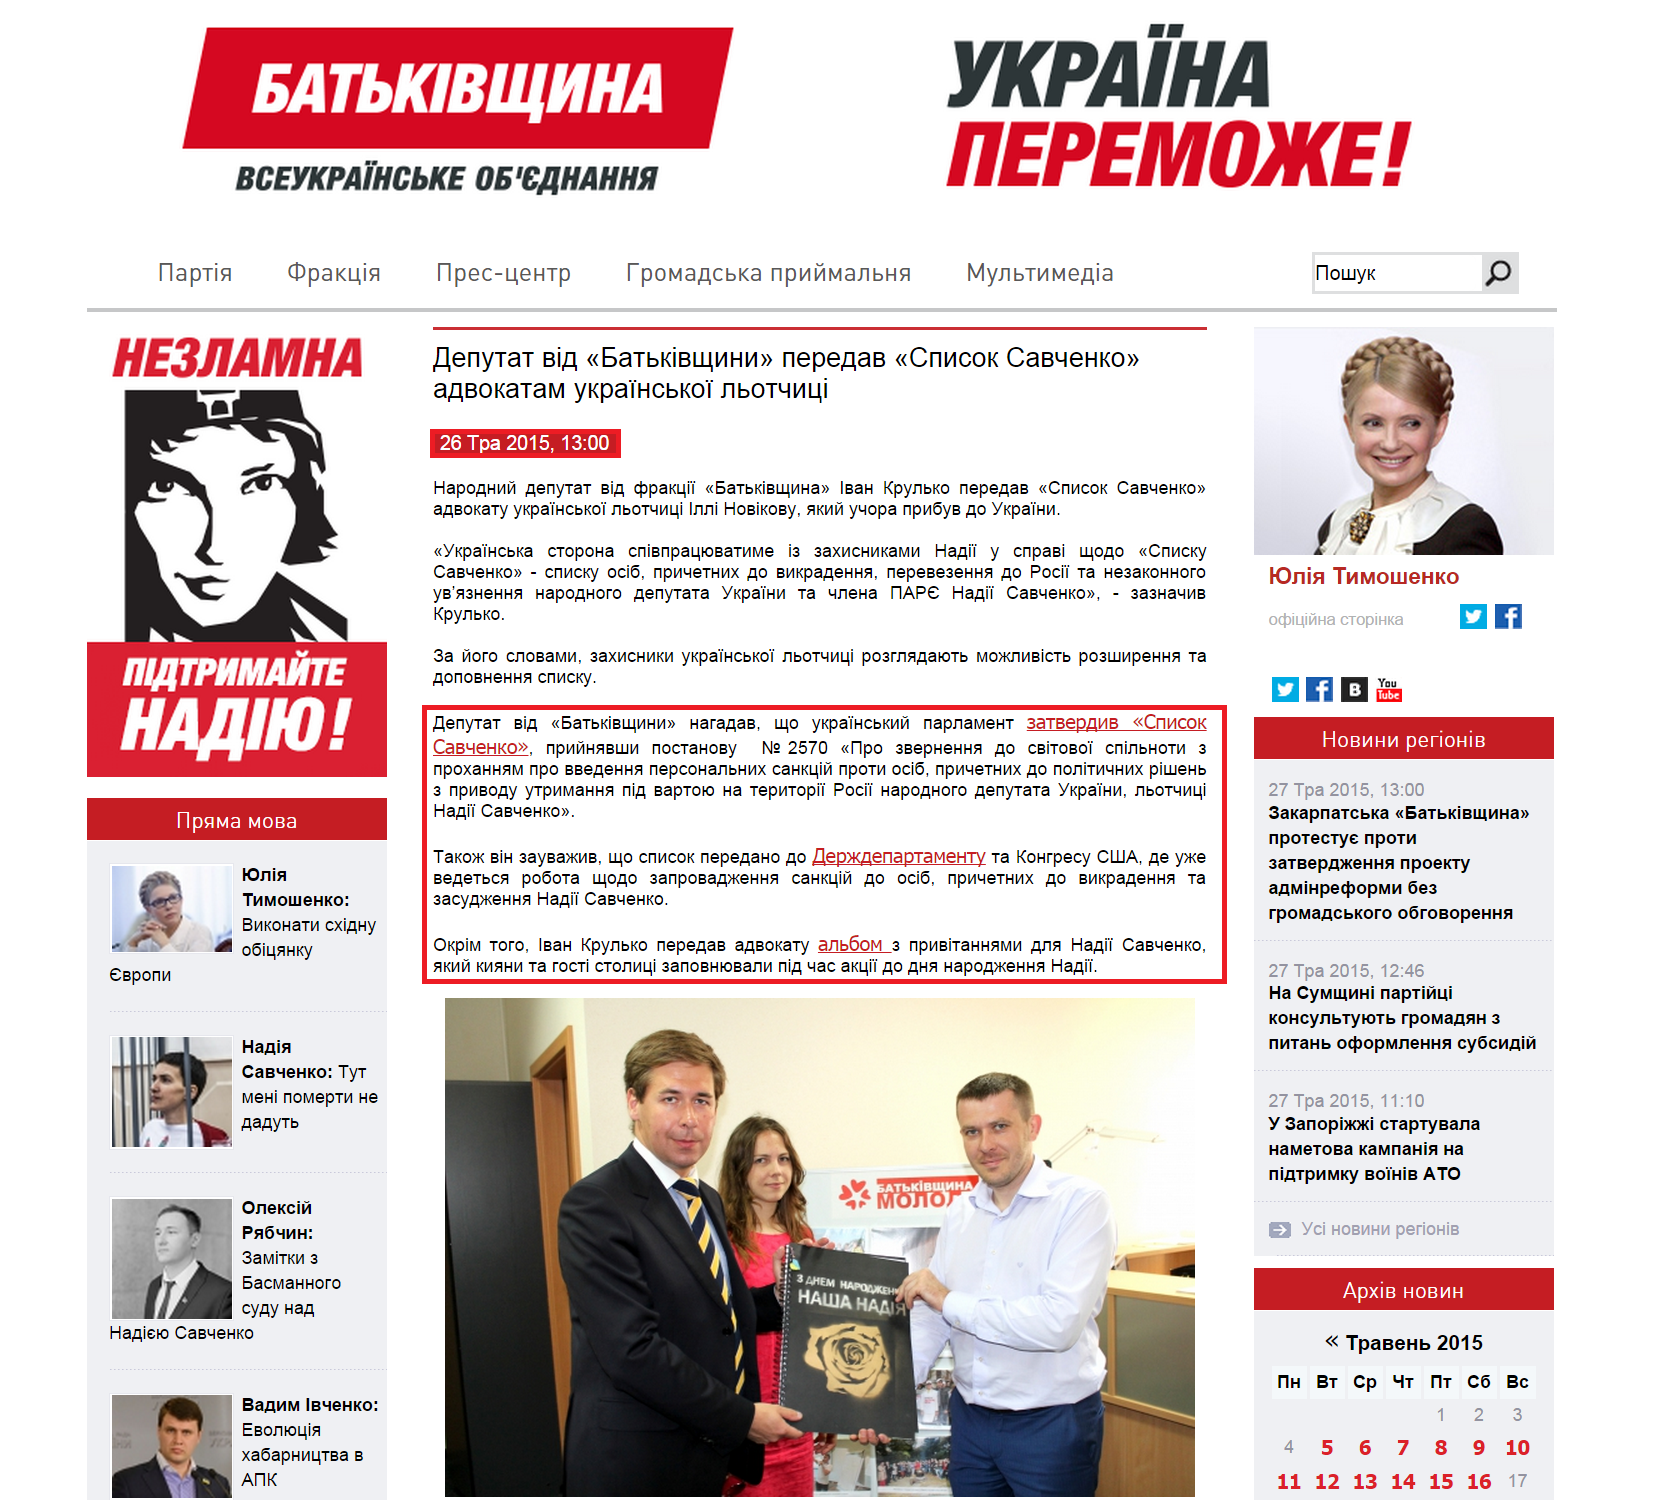 http://batkivshchyna.com.ua/news/22595.html